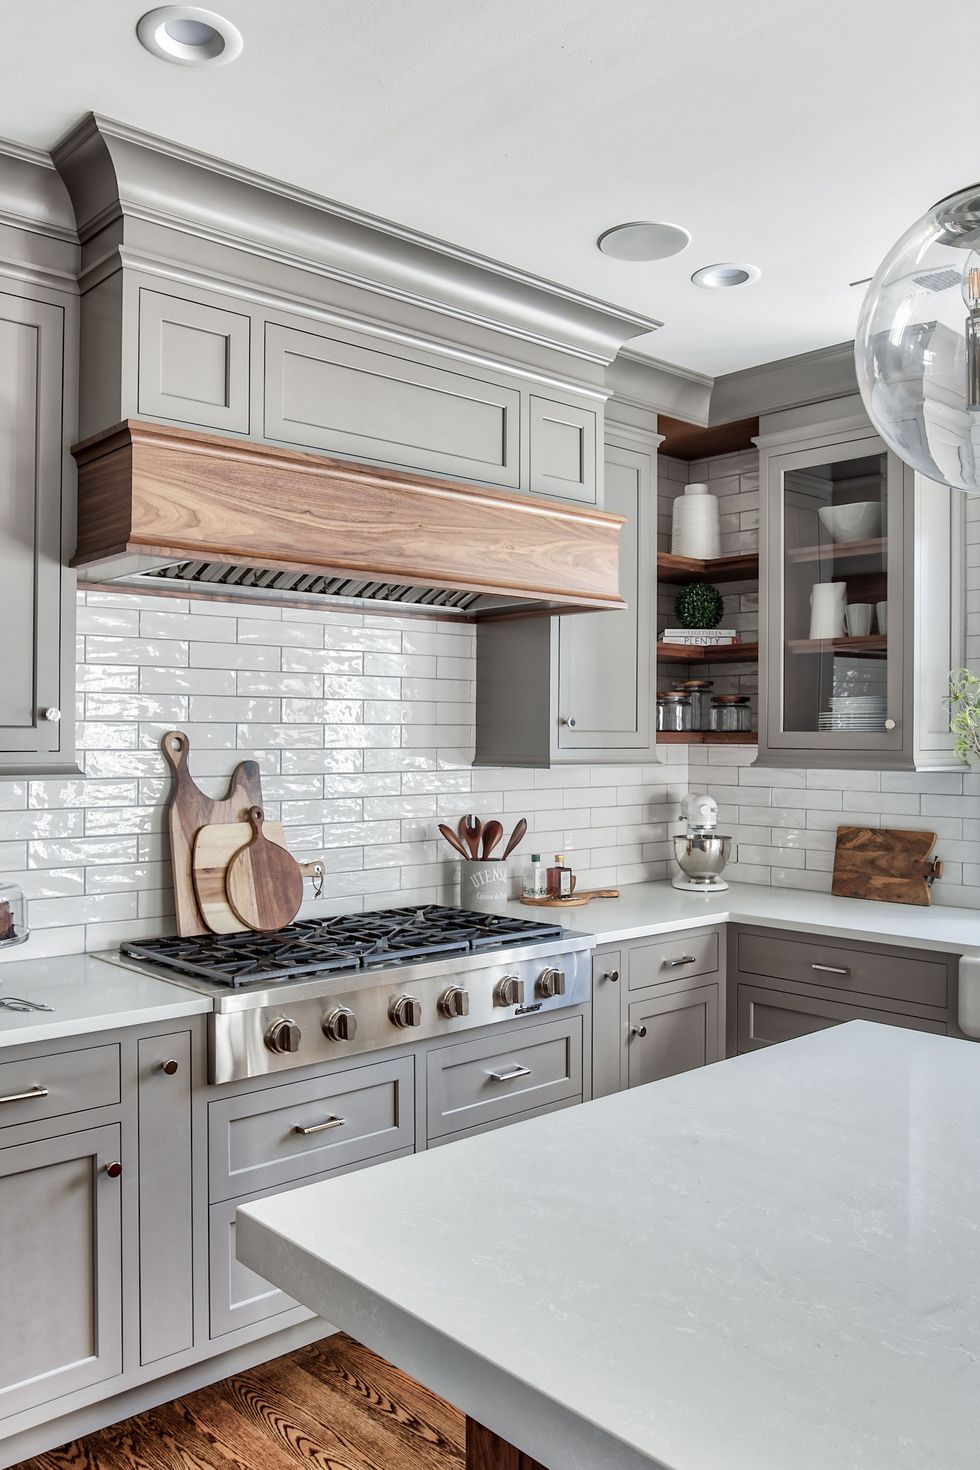 hình ảnh phòng bếp màu xám trắng chủ đạo với hệ tủ bếp có tay nắm bền đẹp